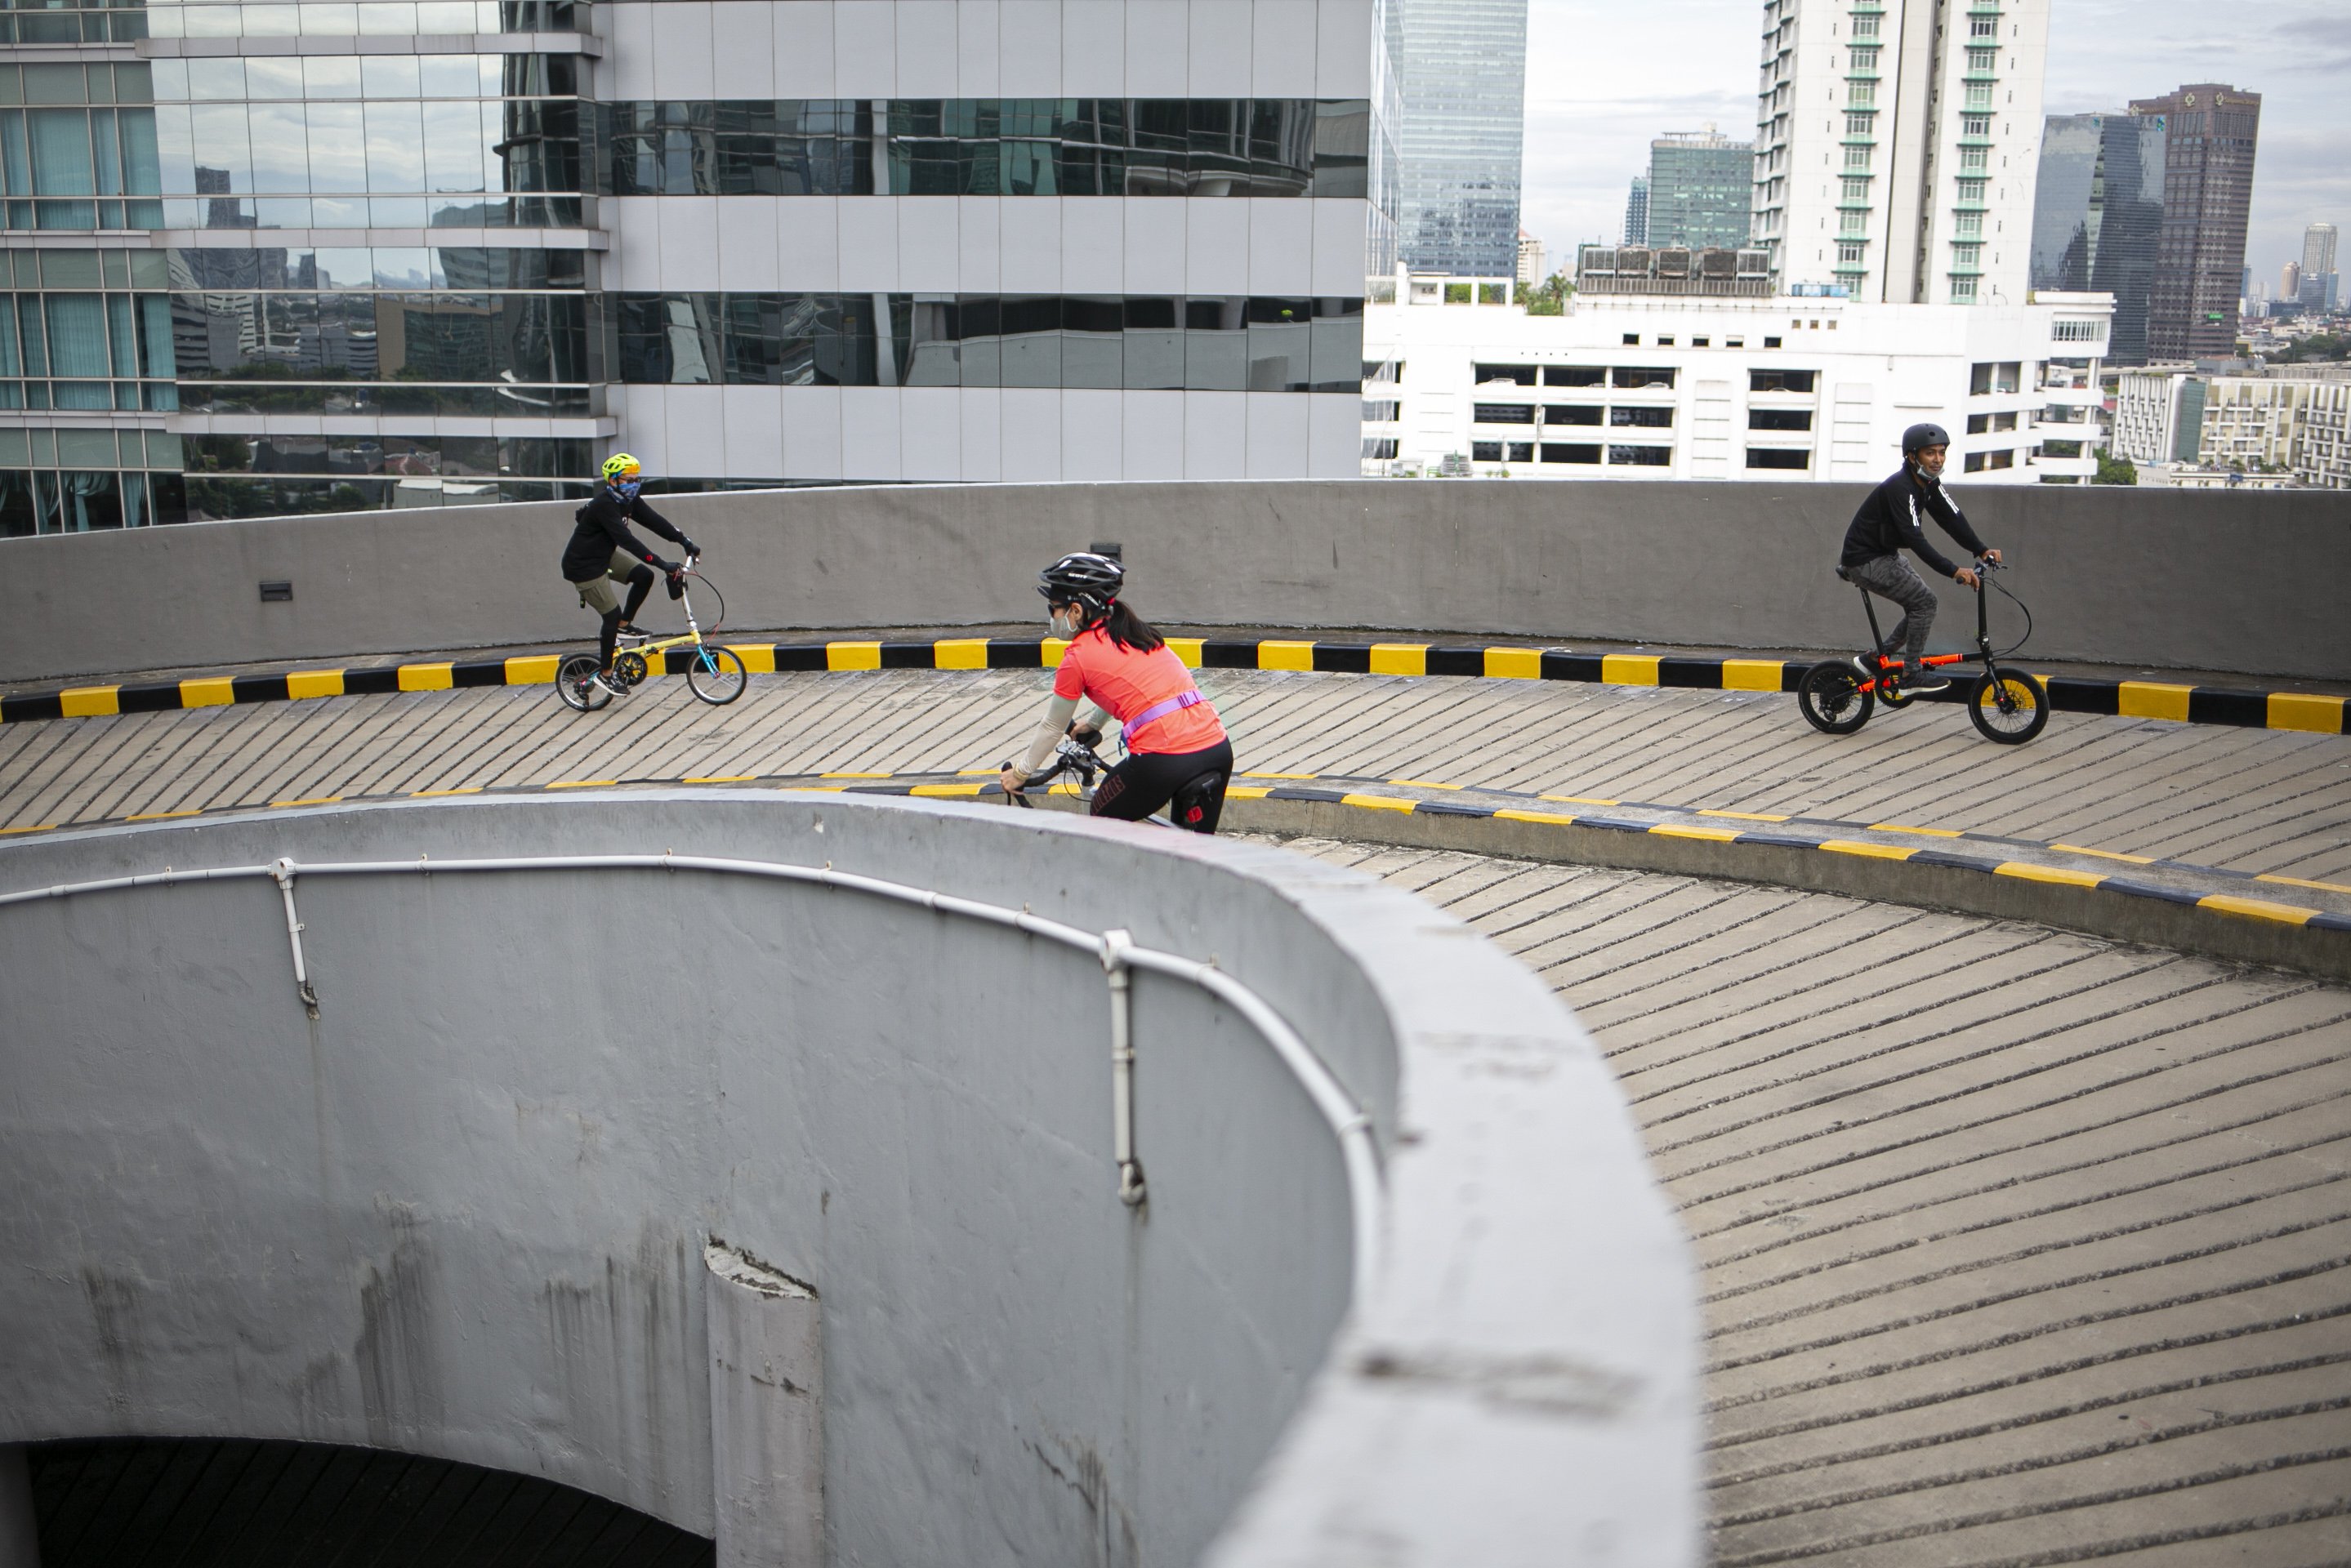 Warga mengayuh sepedanya di jalan spiral menuju gedung parkir di sebuah pusat perbelanjaan, Jakarta, Sabtu (5/12/2020). Selain untuk meningkatkan kebugaran dan imunitas tubuh di tengah pandemi COVID-19, kegiatan tersebut juga bertujuan untuk meningkatkan animo masyarakat berkunjung ke pusat perbelanjaan.